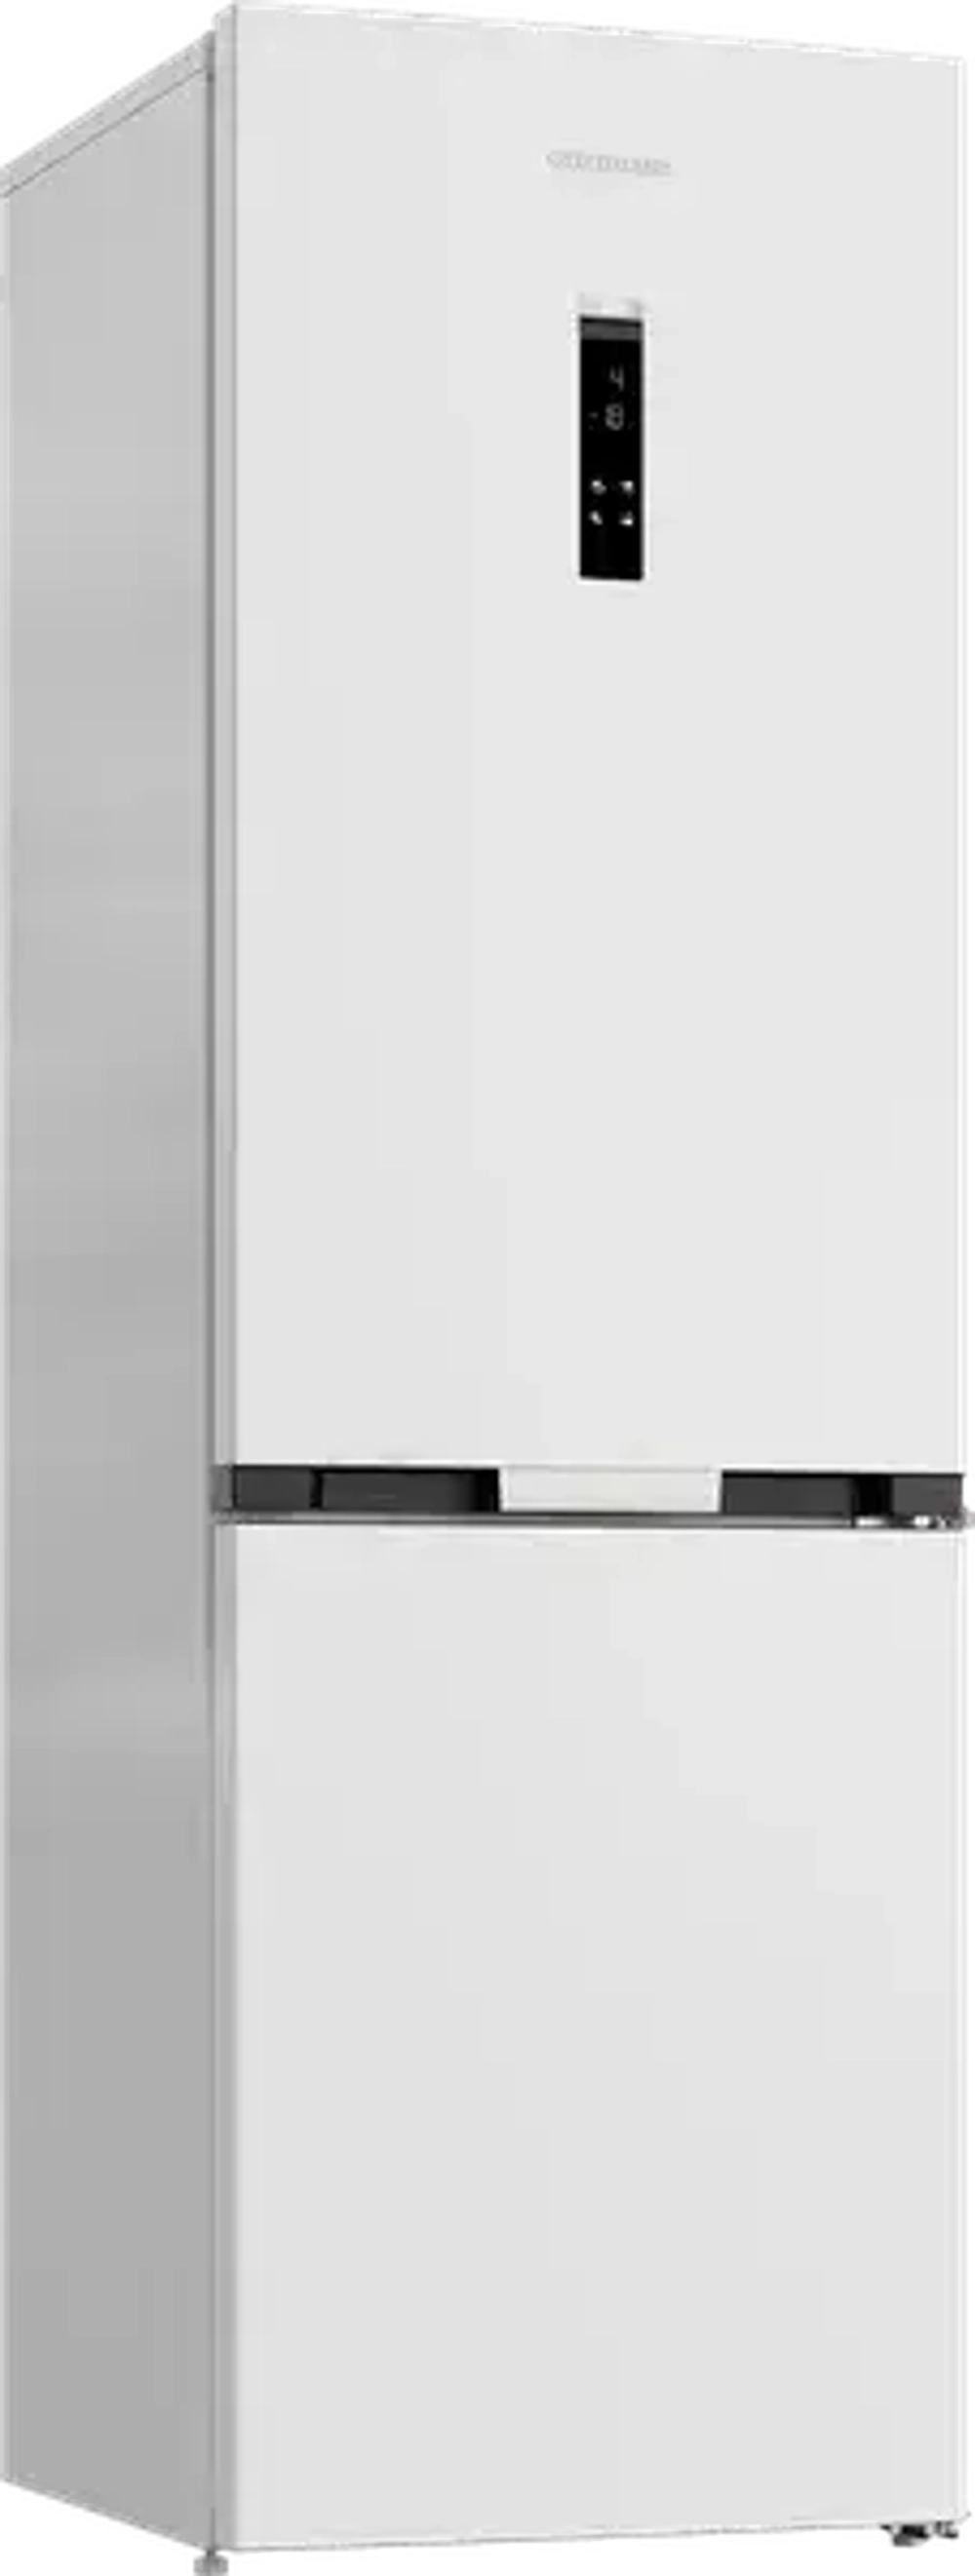 Холодильник с нижней морозильной камерой Grundig GKPN669307FW (DLN)